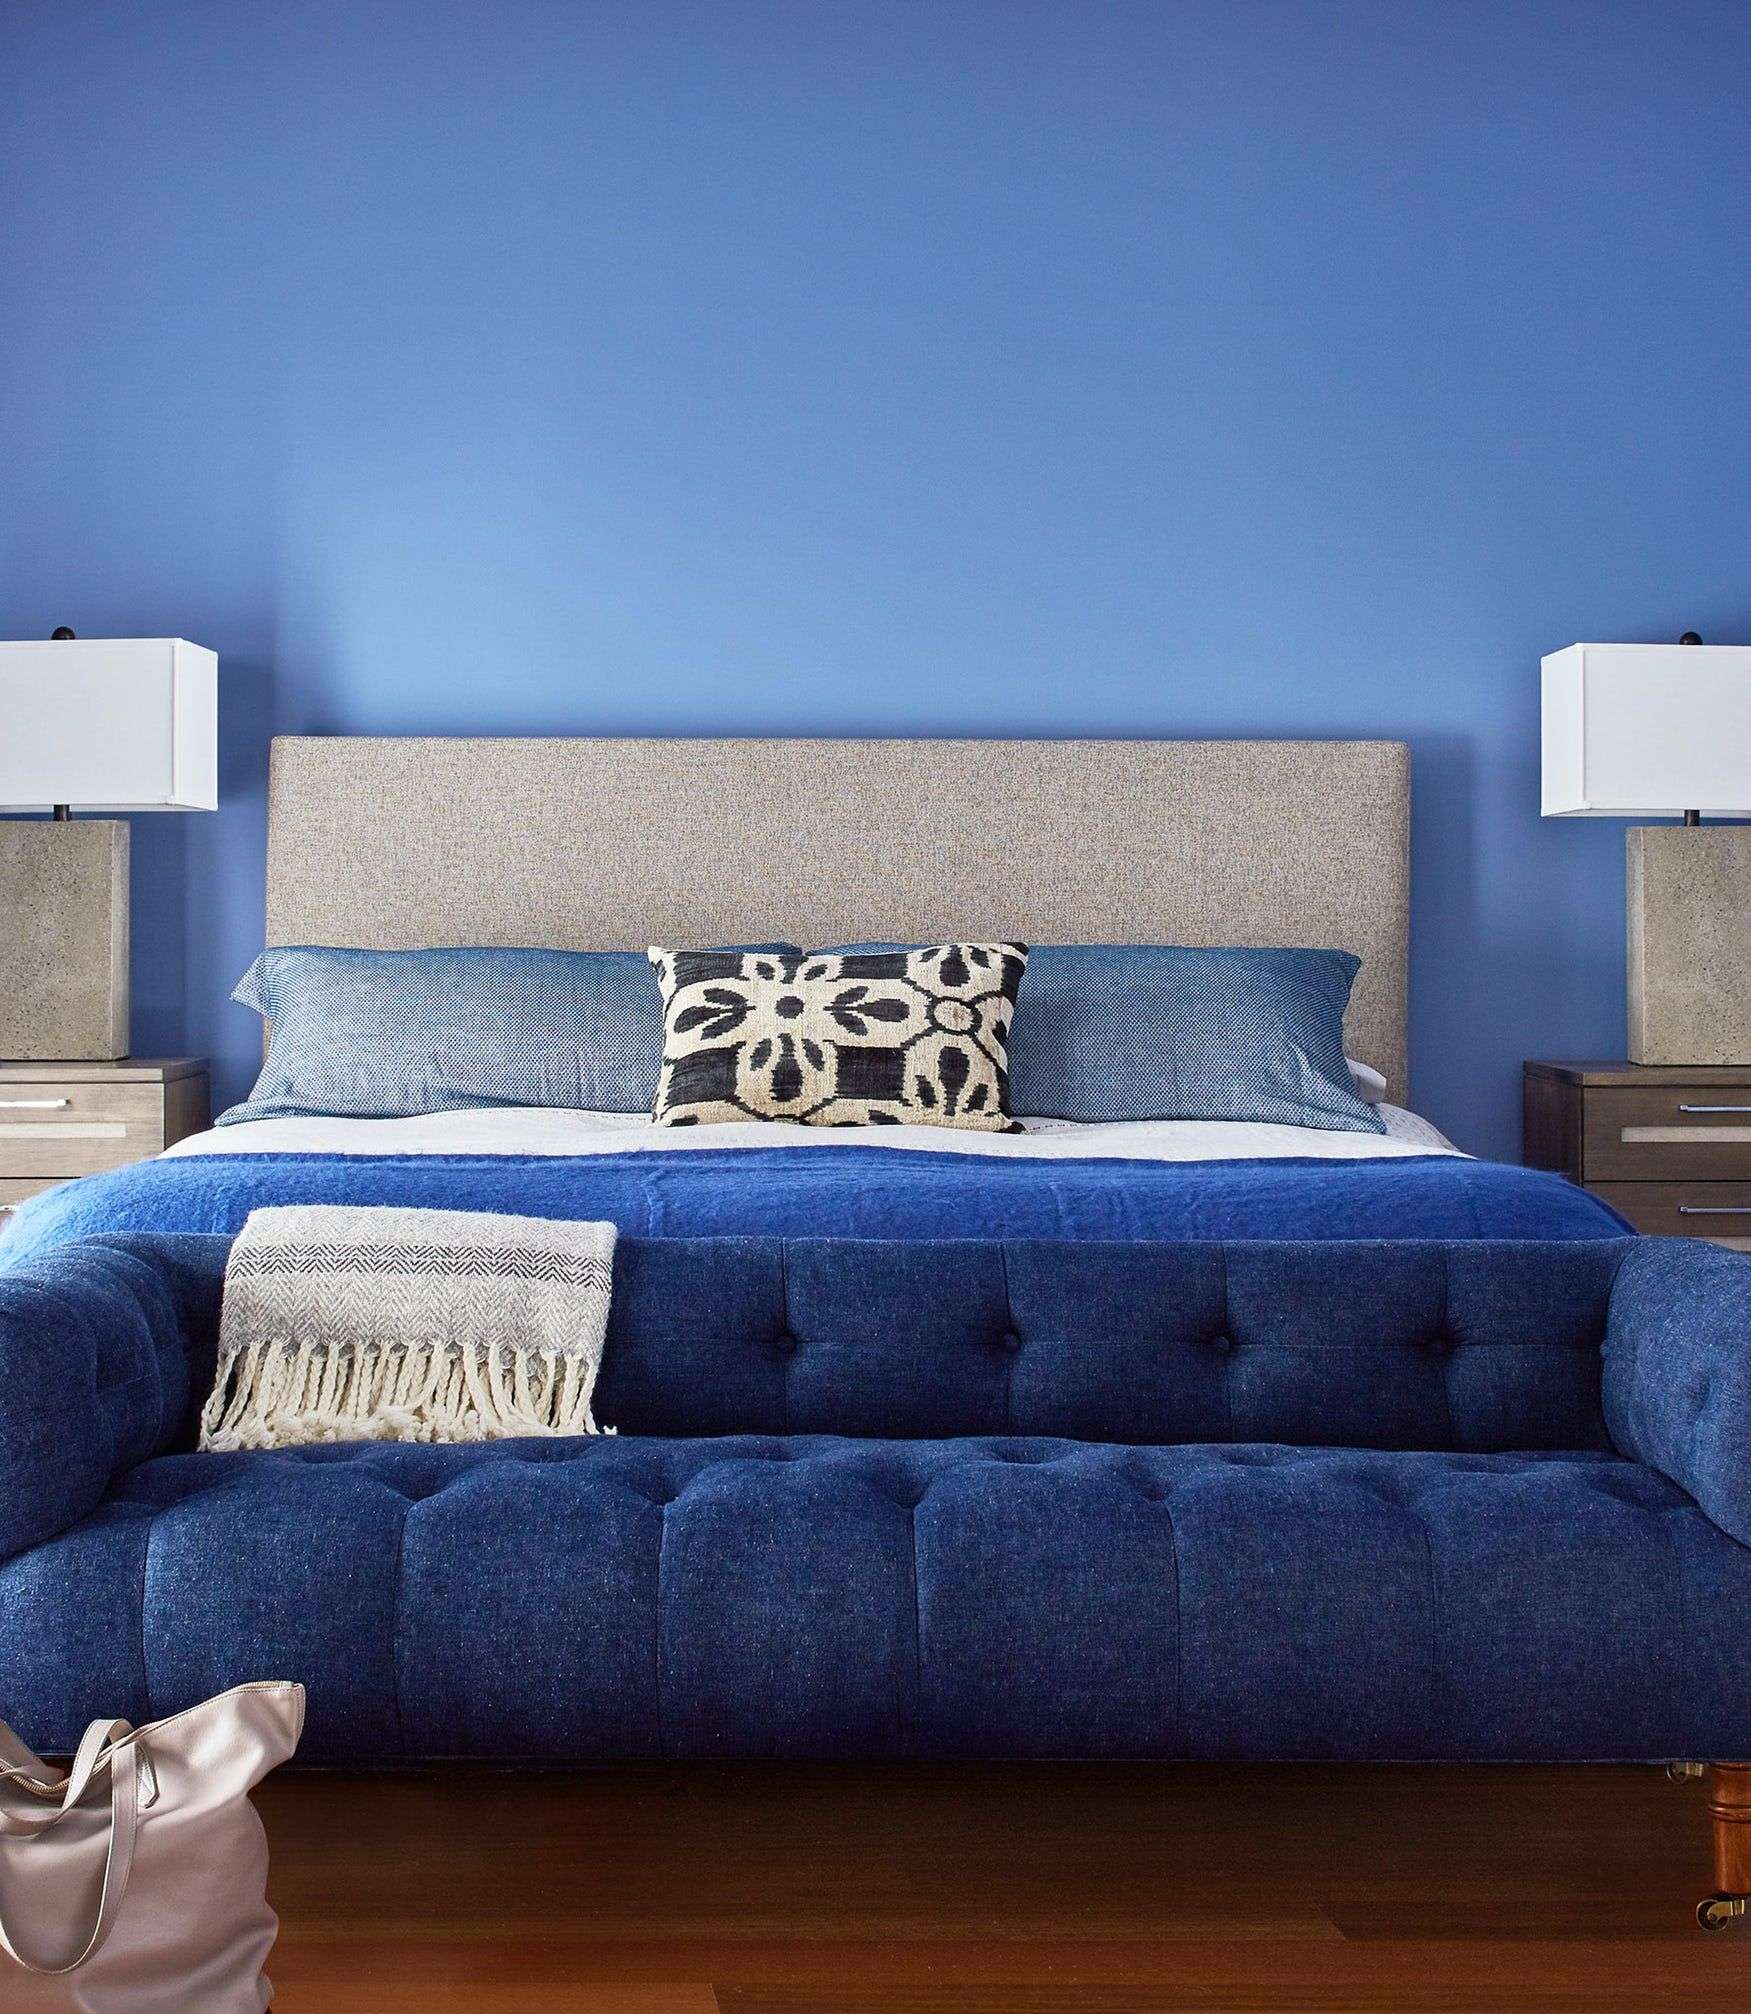 Sức lôi cuốn khó lòng chối từ những căn phòng ngủ mang sắc xanh biển cả - Ảnh 2.